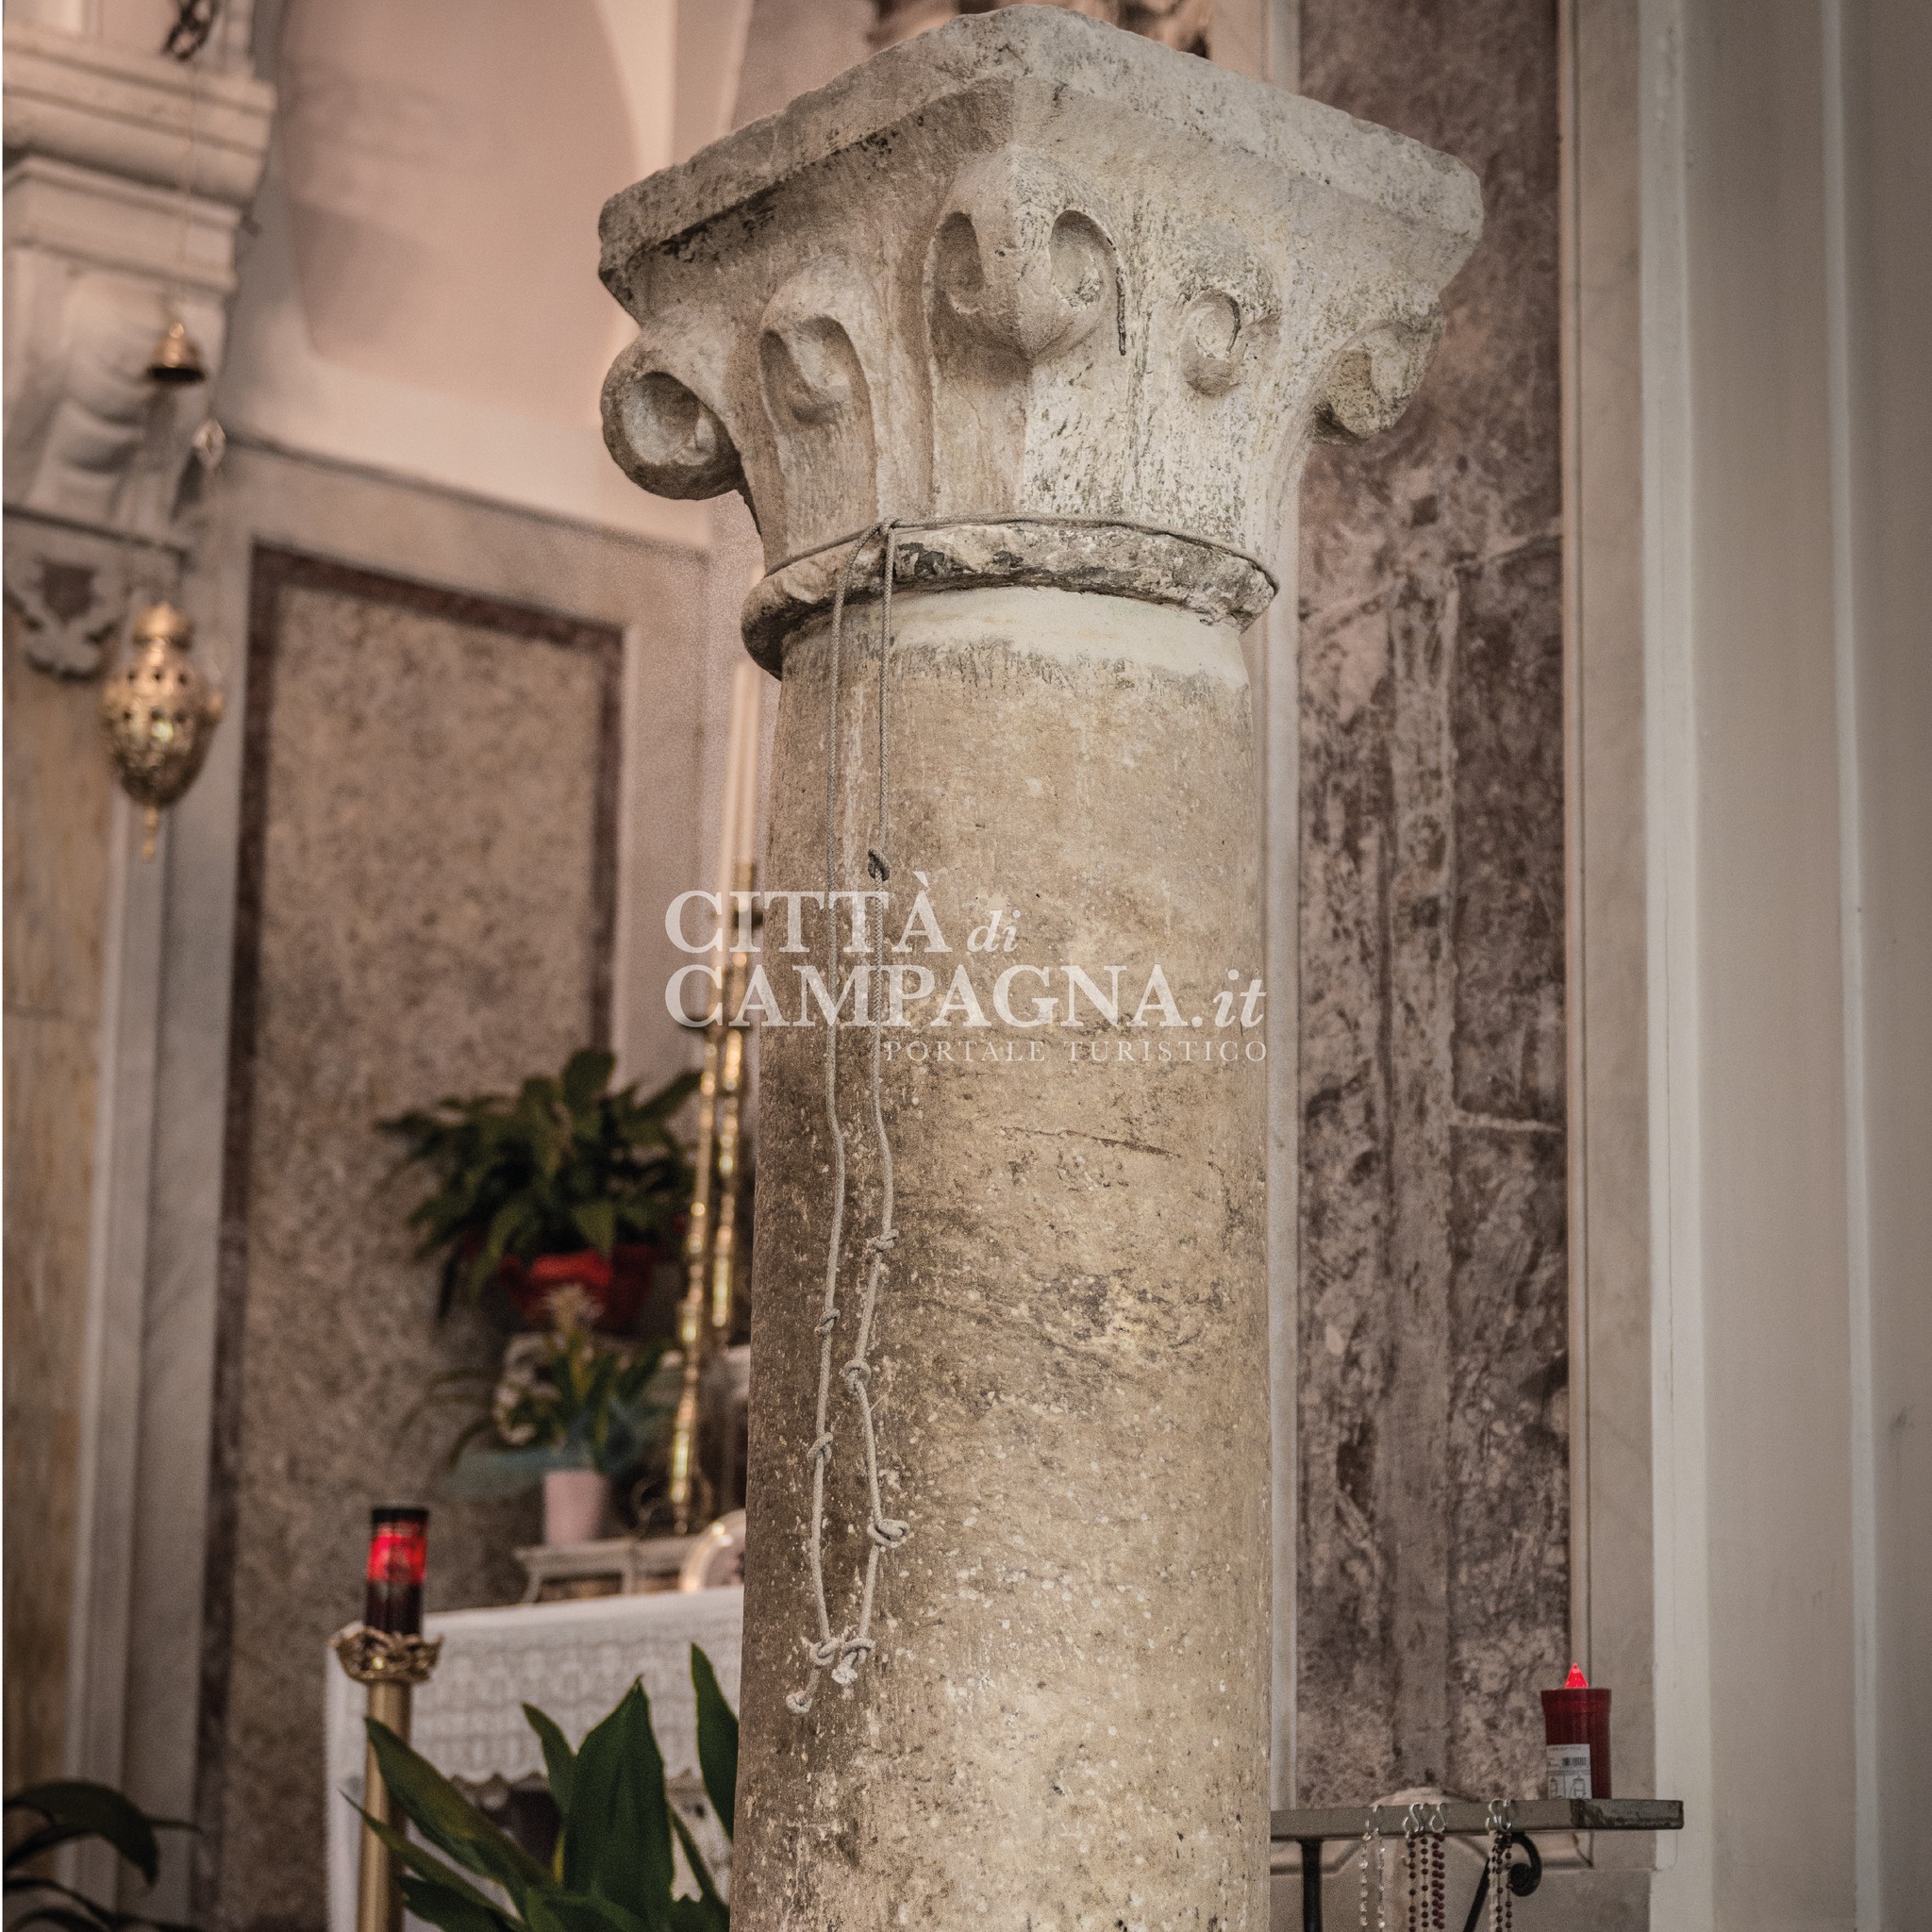 Colonna taumaturgica di Sant'Antonino nella chiesa di Campagna